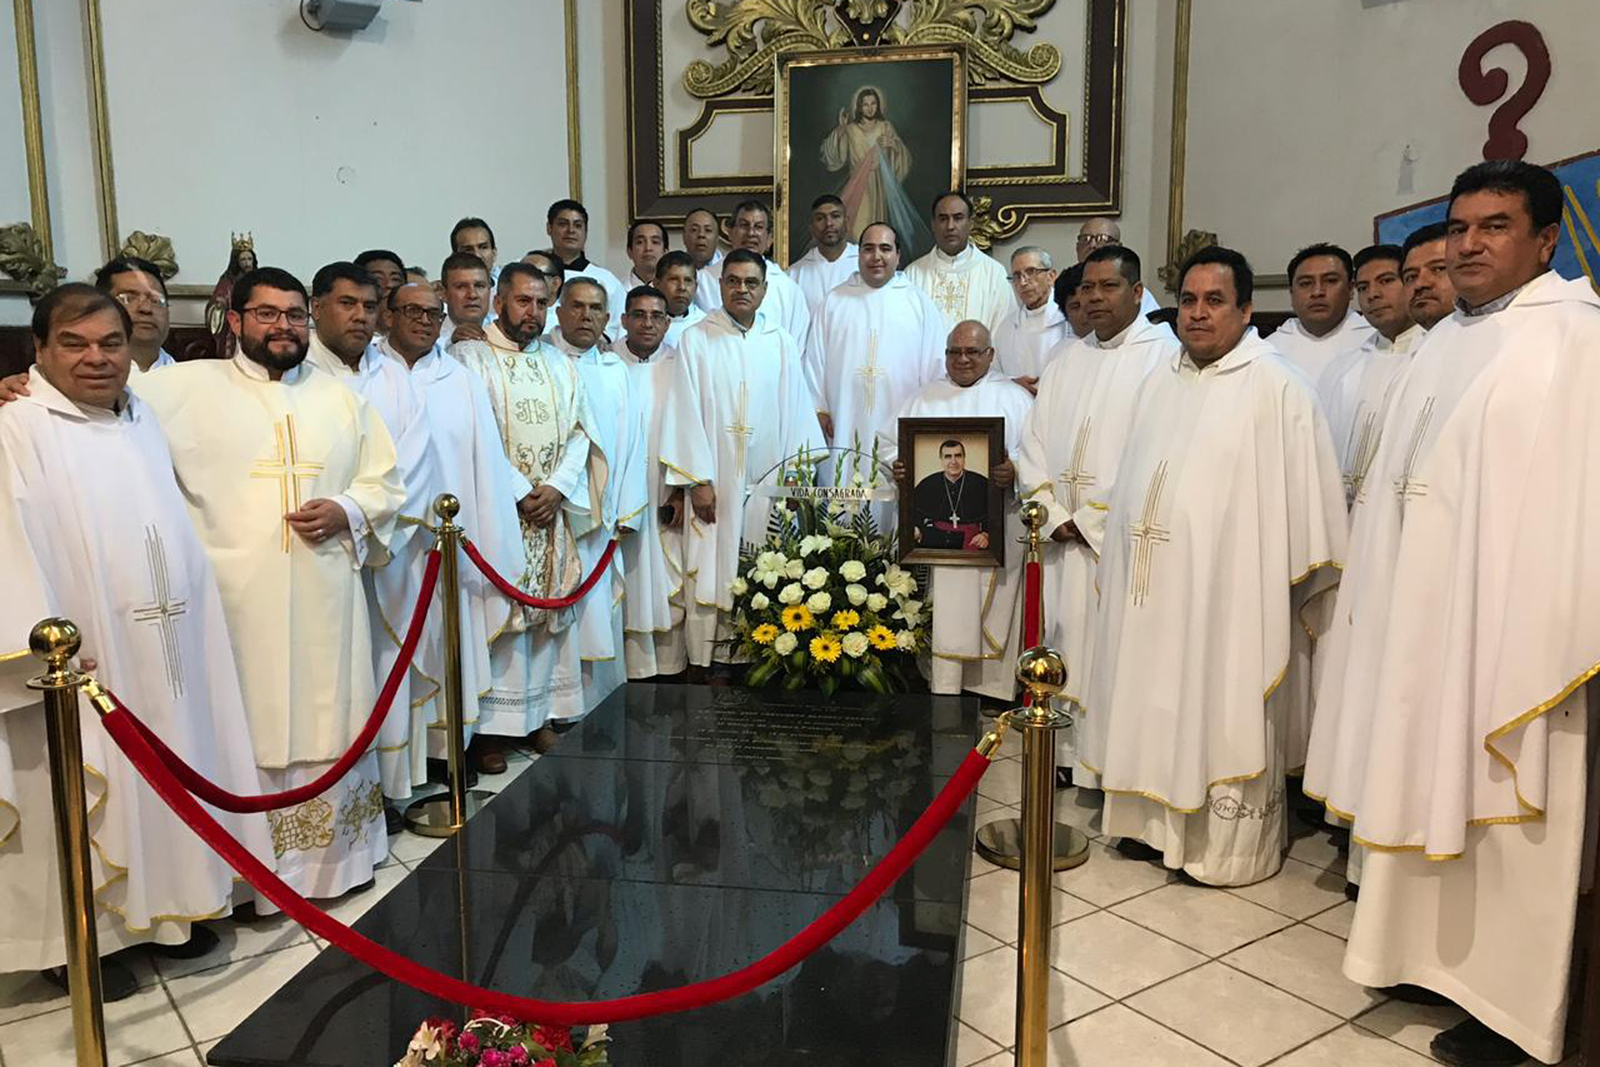 La Diócesis de Gómez Palacio celebra con una ceremonia eucarística y bendición de la lápida del obispo, su décimo aniversario desde que fue erigida como iglesia particular, en febrero de 2009. (EL SIGLO DE TORREÓN)